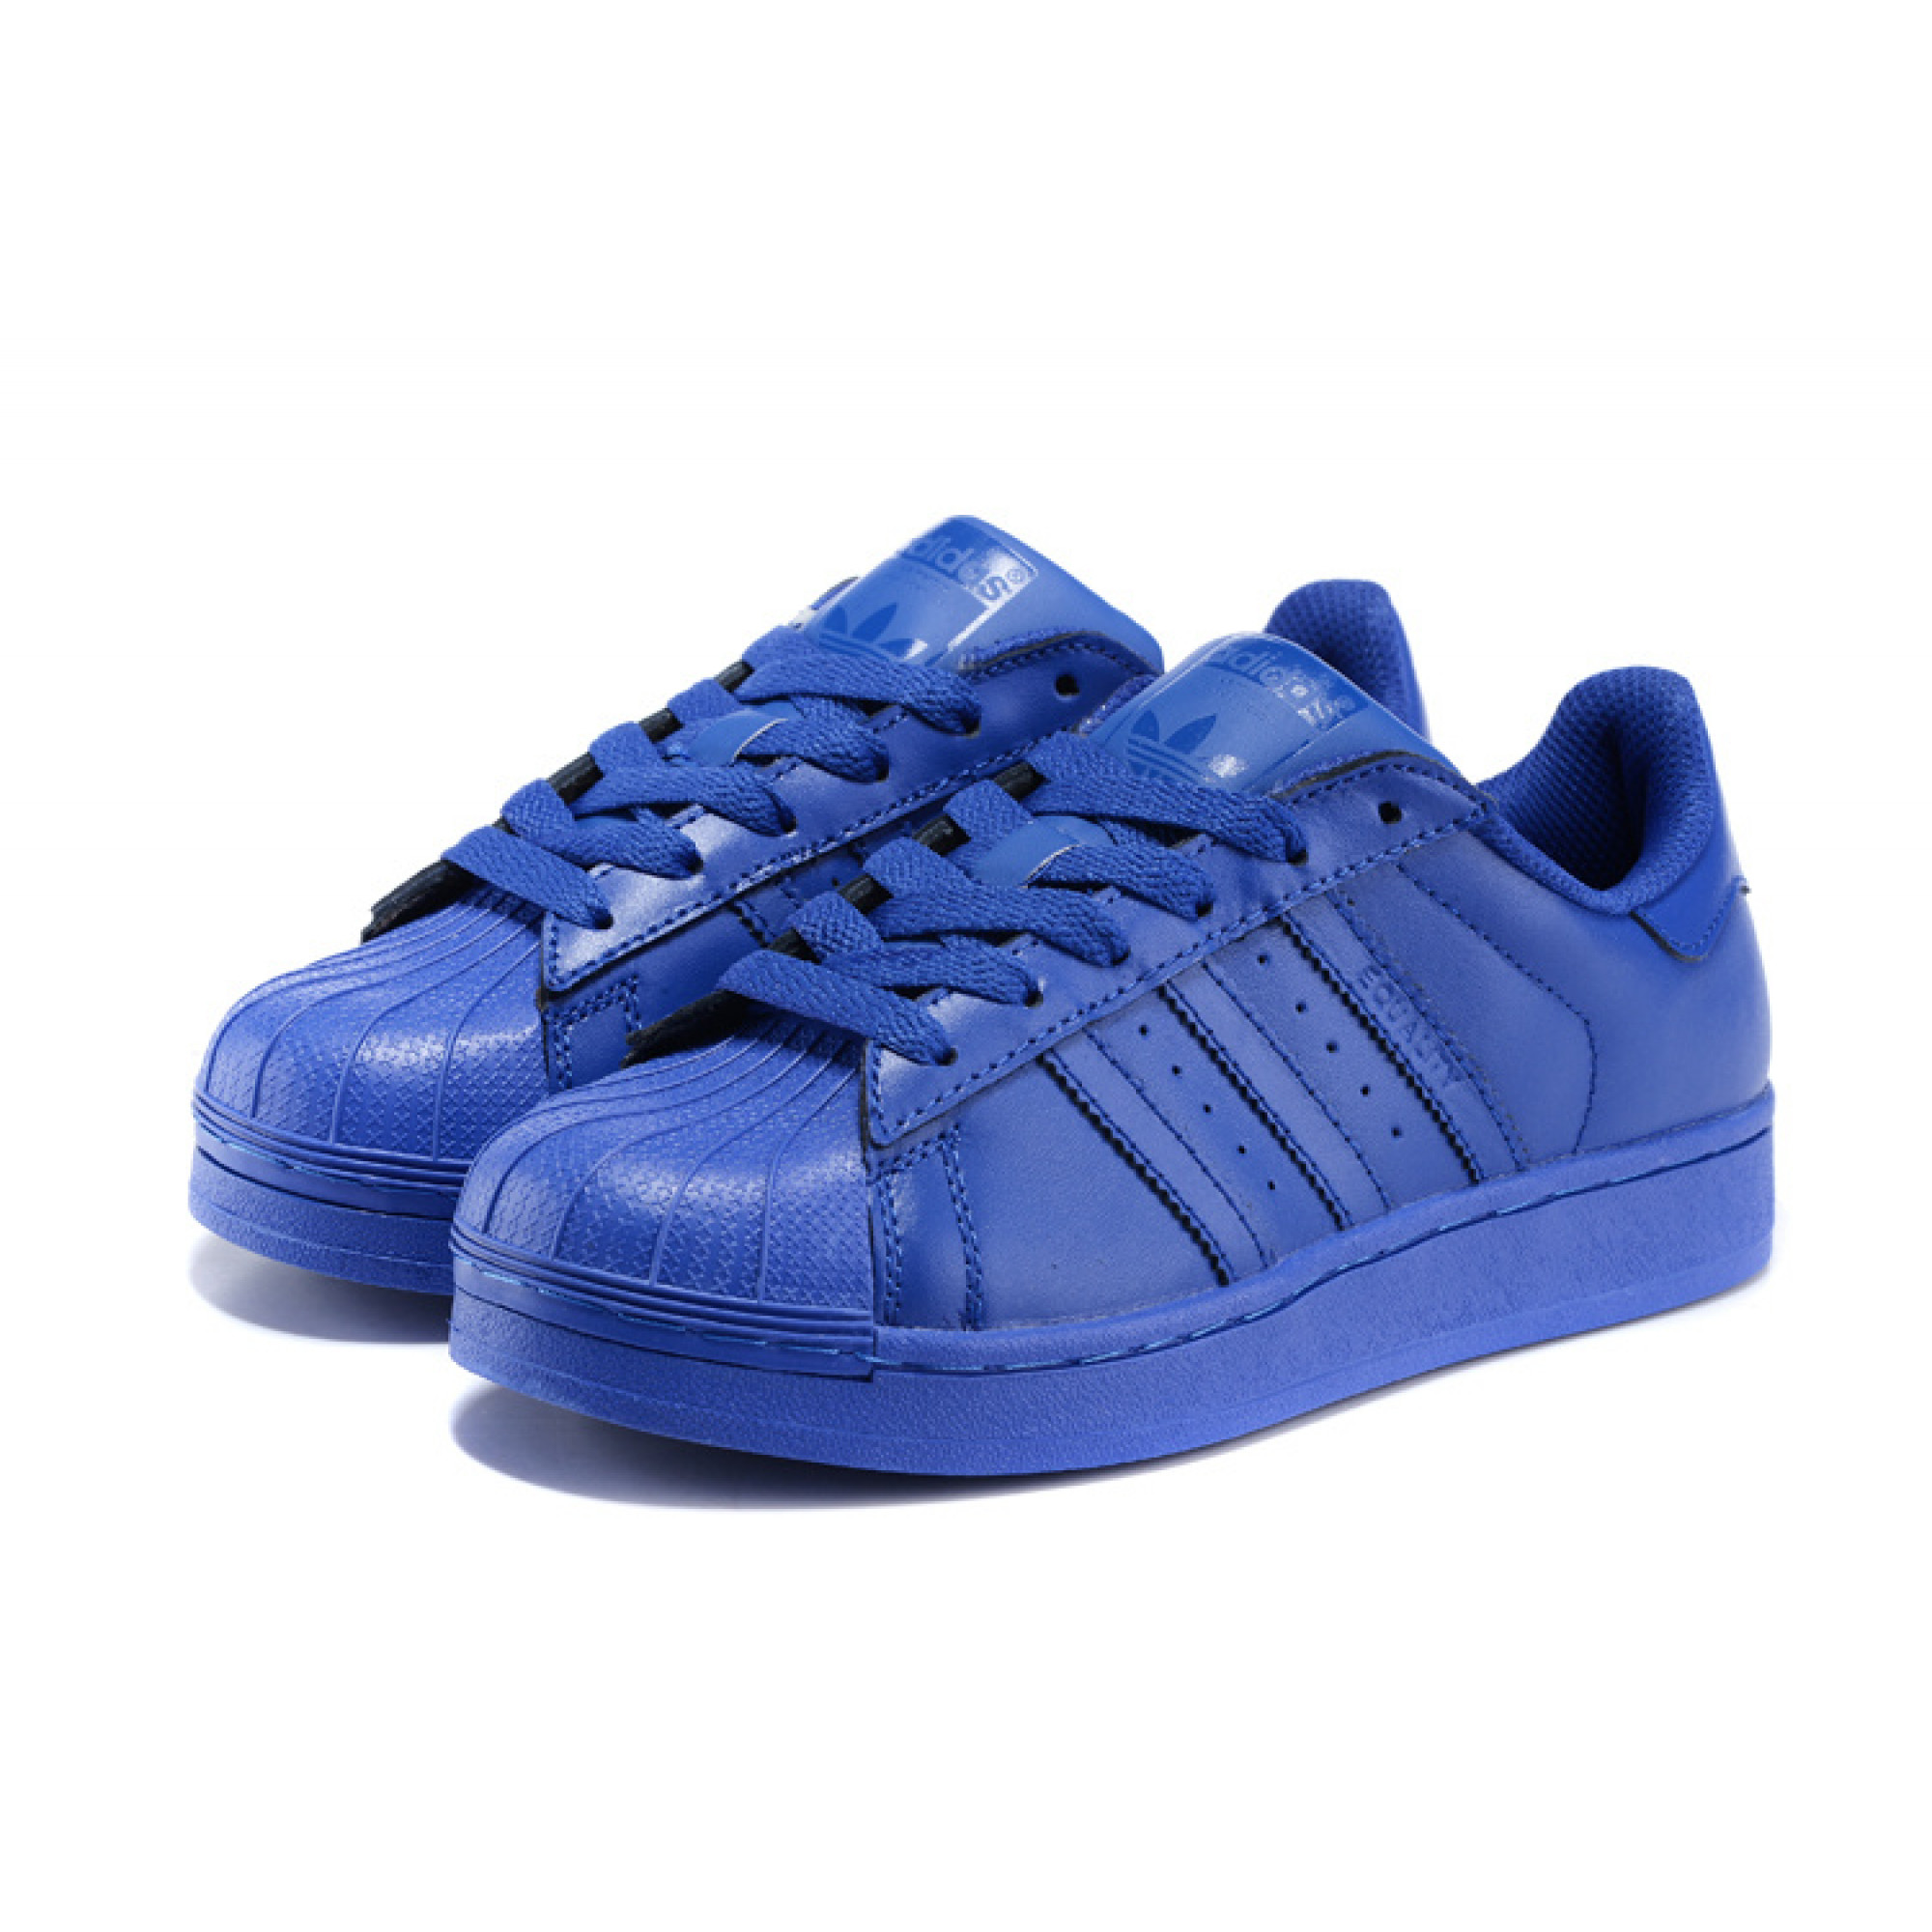 Кроссовки adidas синие. Adidas Originals Superstar синие. Кроссовки adidas Superstar синие. Кеды adidas Originals Superstar синие. Adidas Superstar голубые.